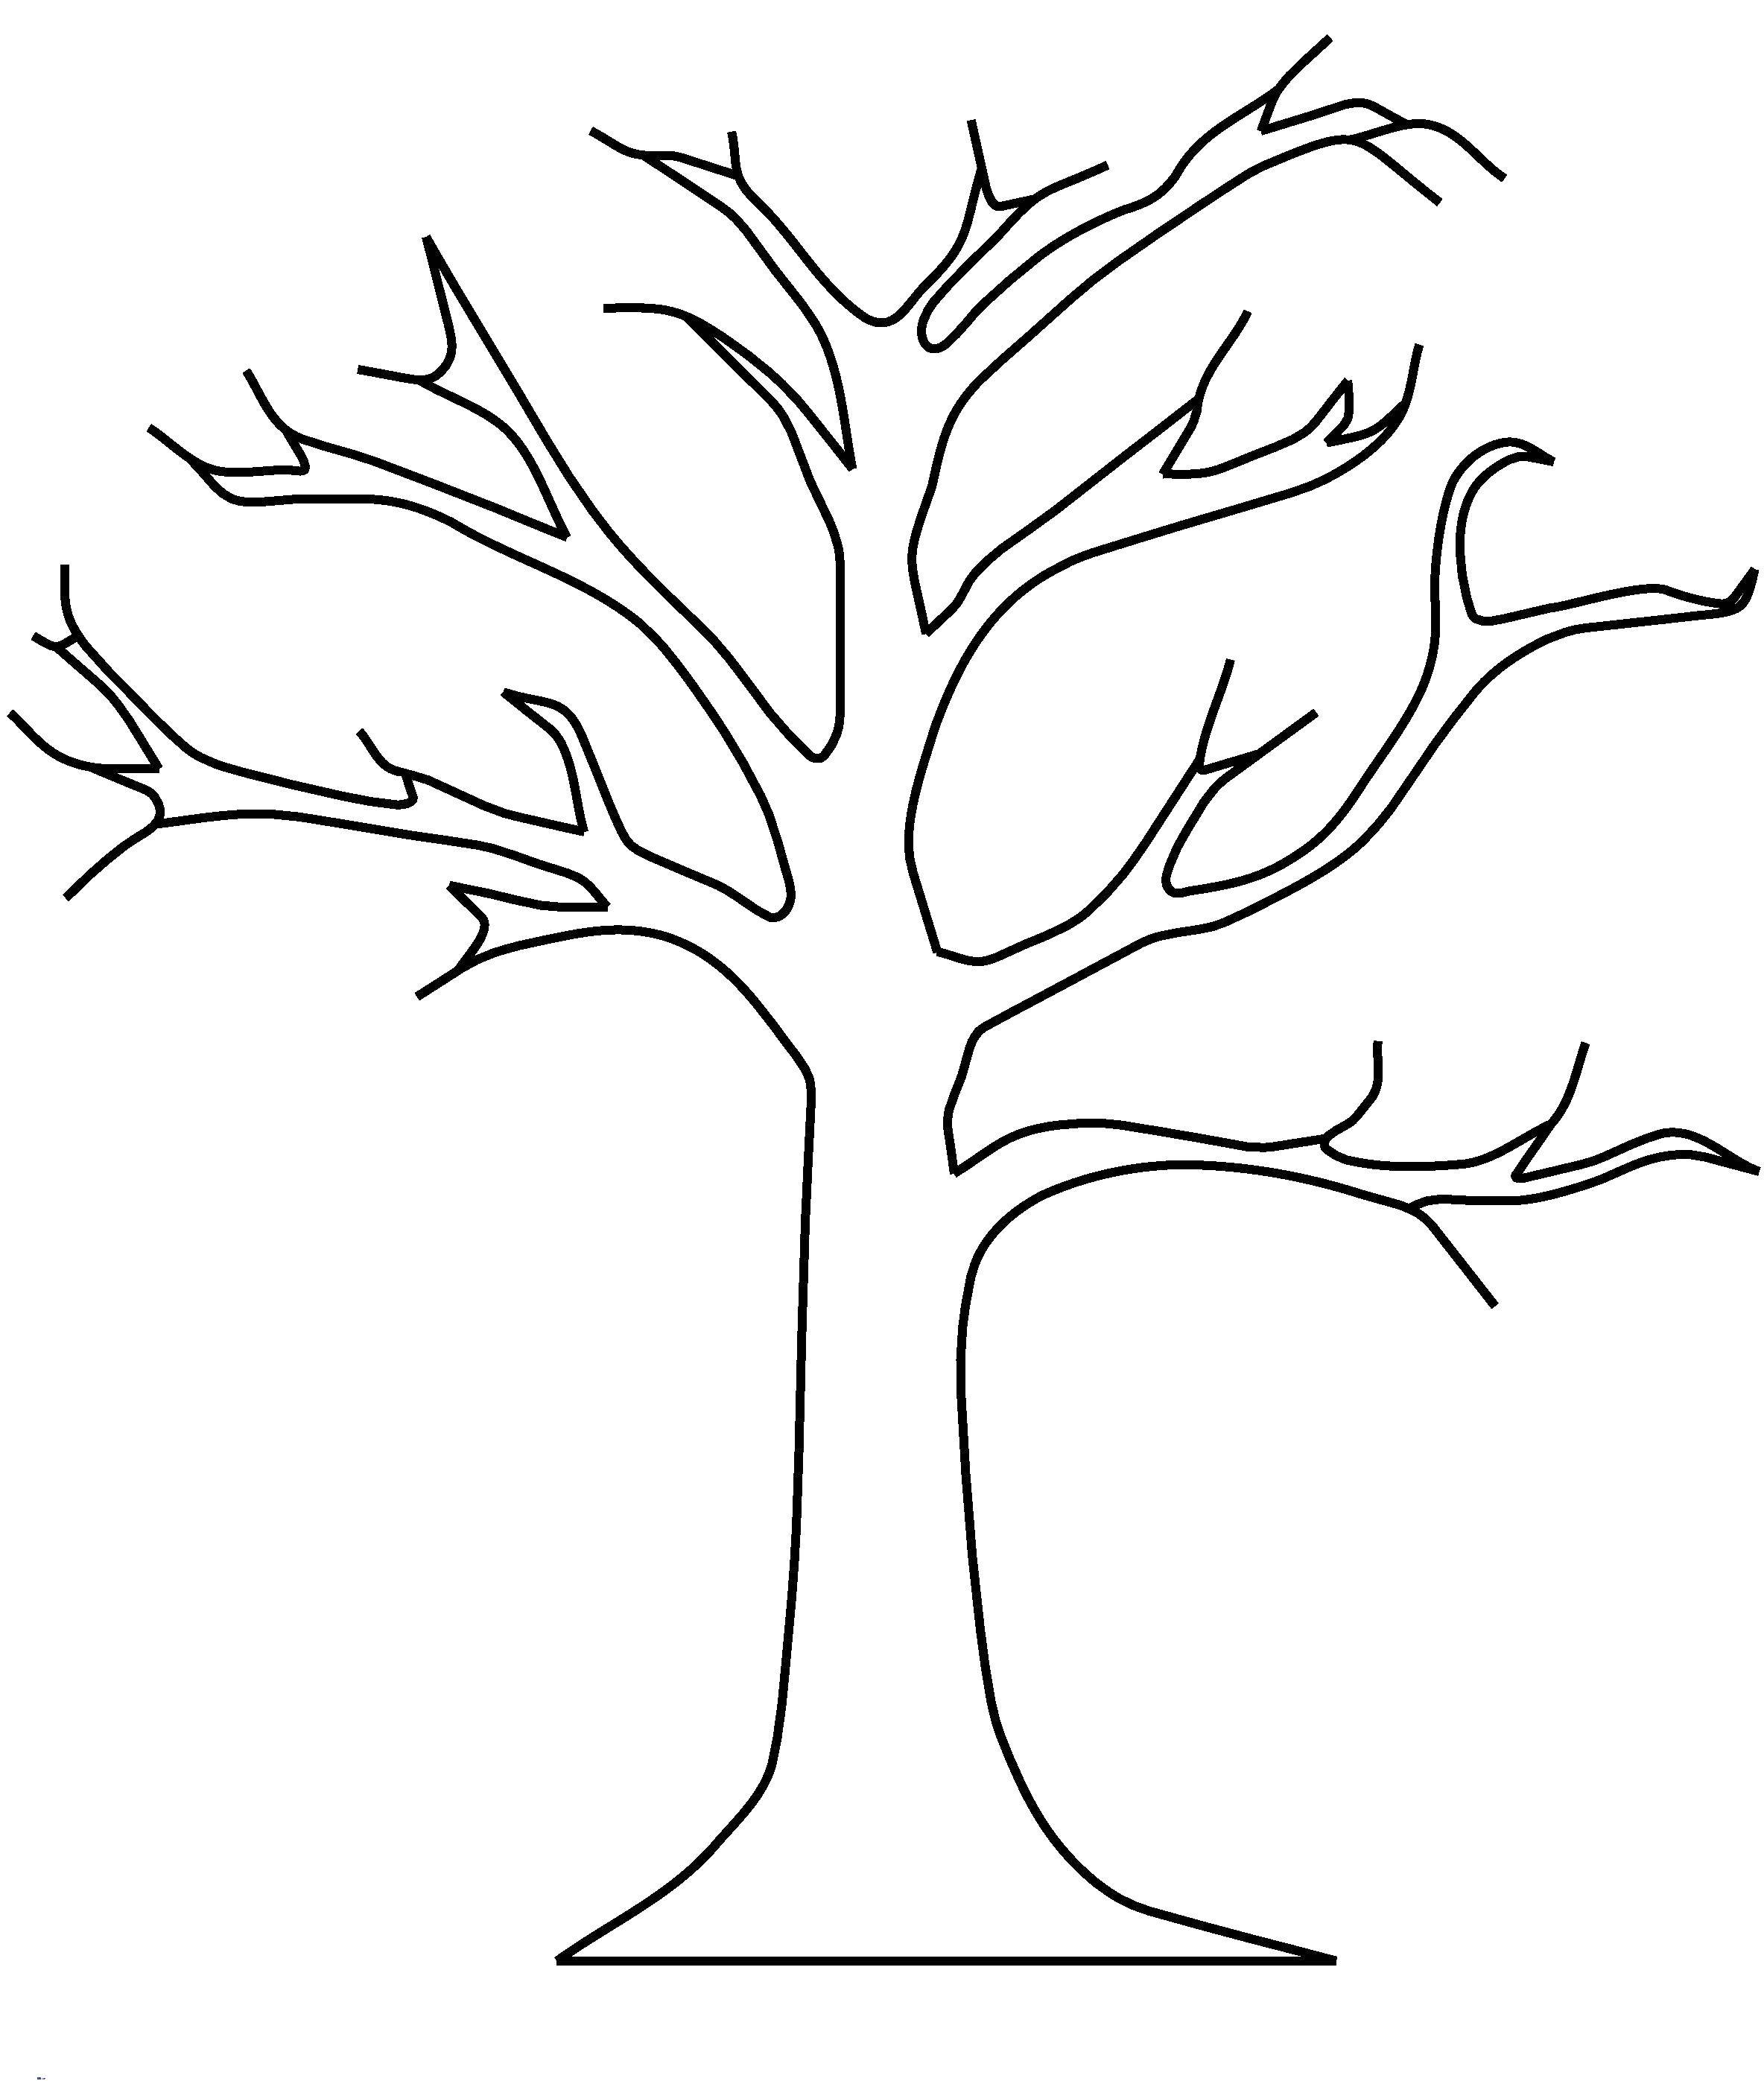 Аппликация дерево шаблон распечатать. Трафарет "дерево". Дерево контур. Дерево раскраска. Раскраска дерево без листьев.